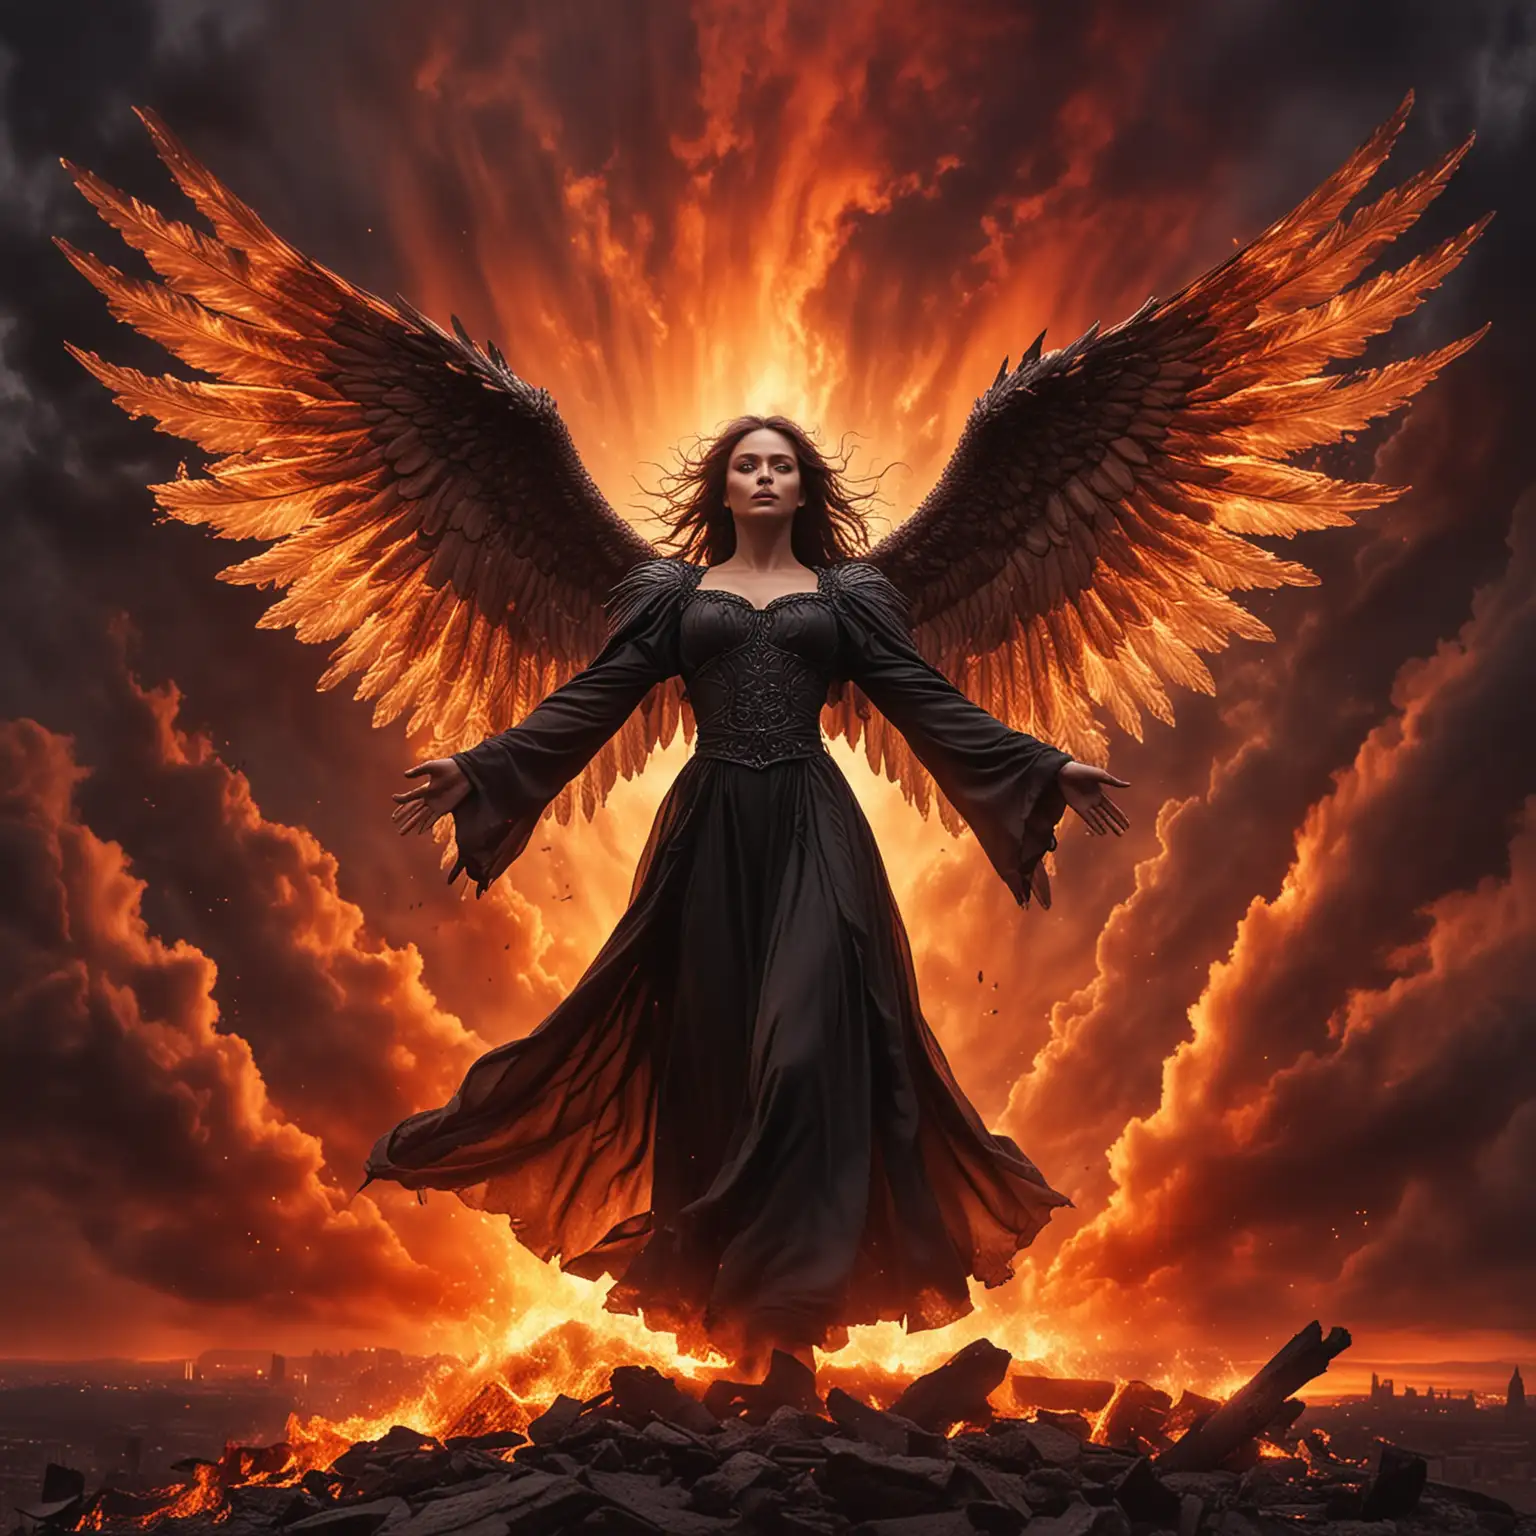 Dark Angel Spreading Wings Against Fiery Sky